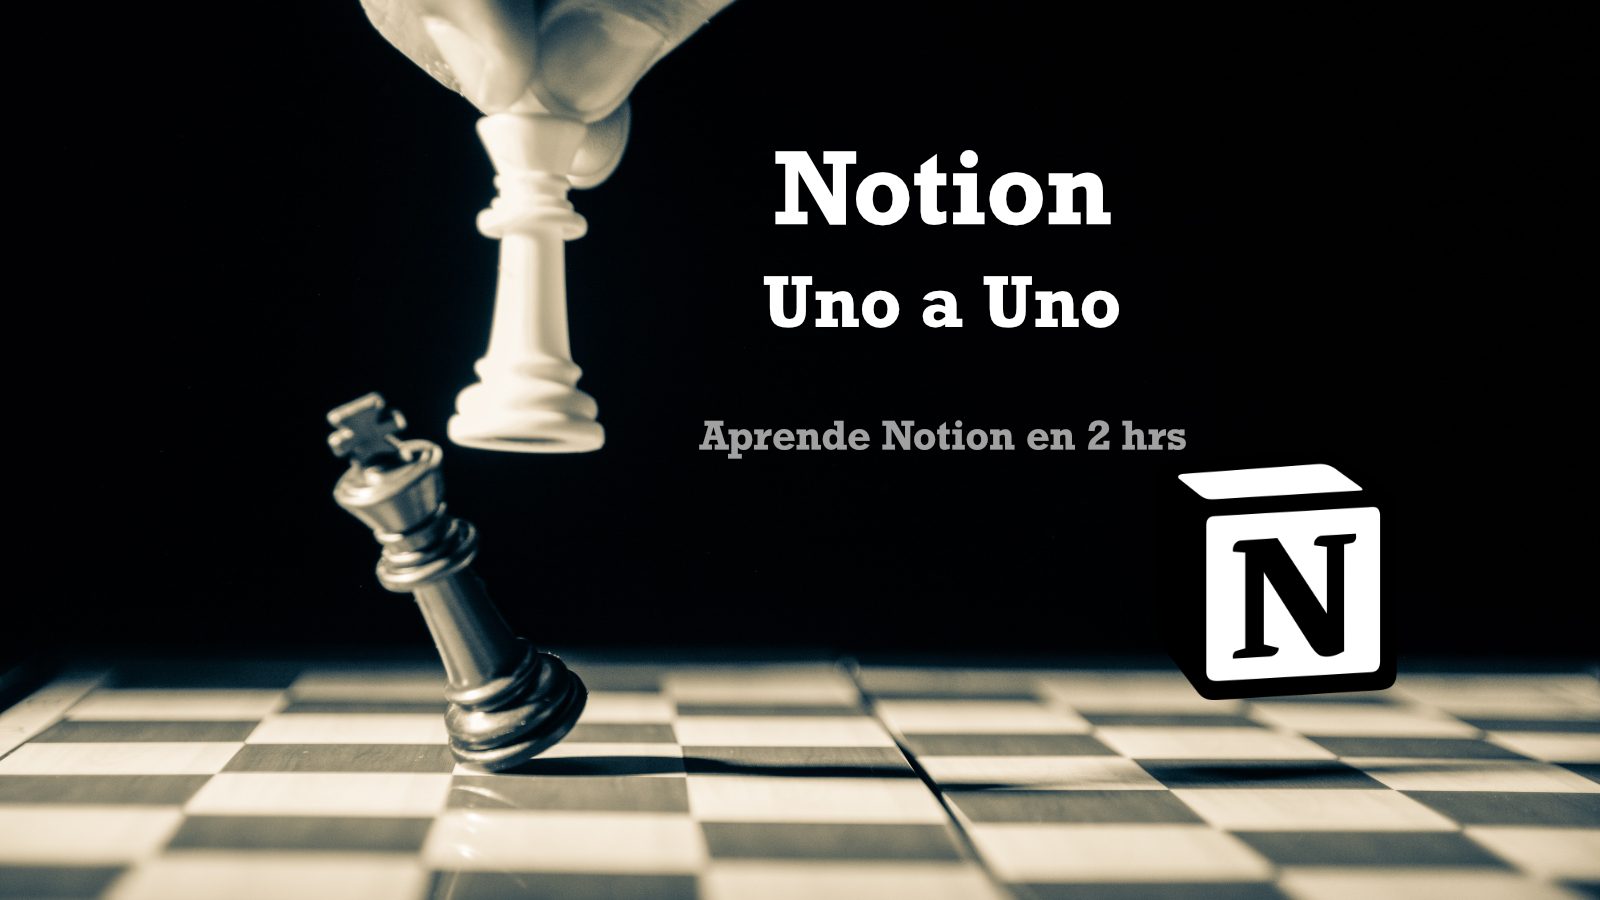 Notion Uno a Uno